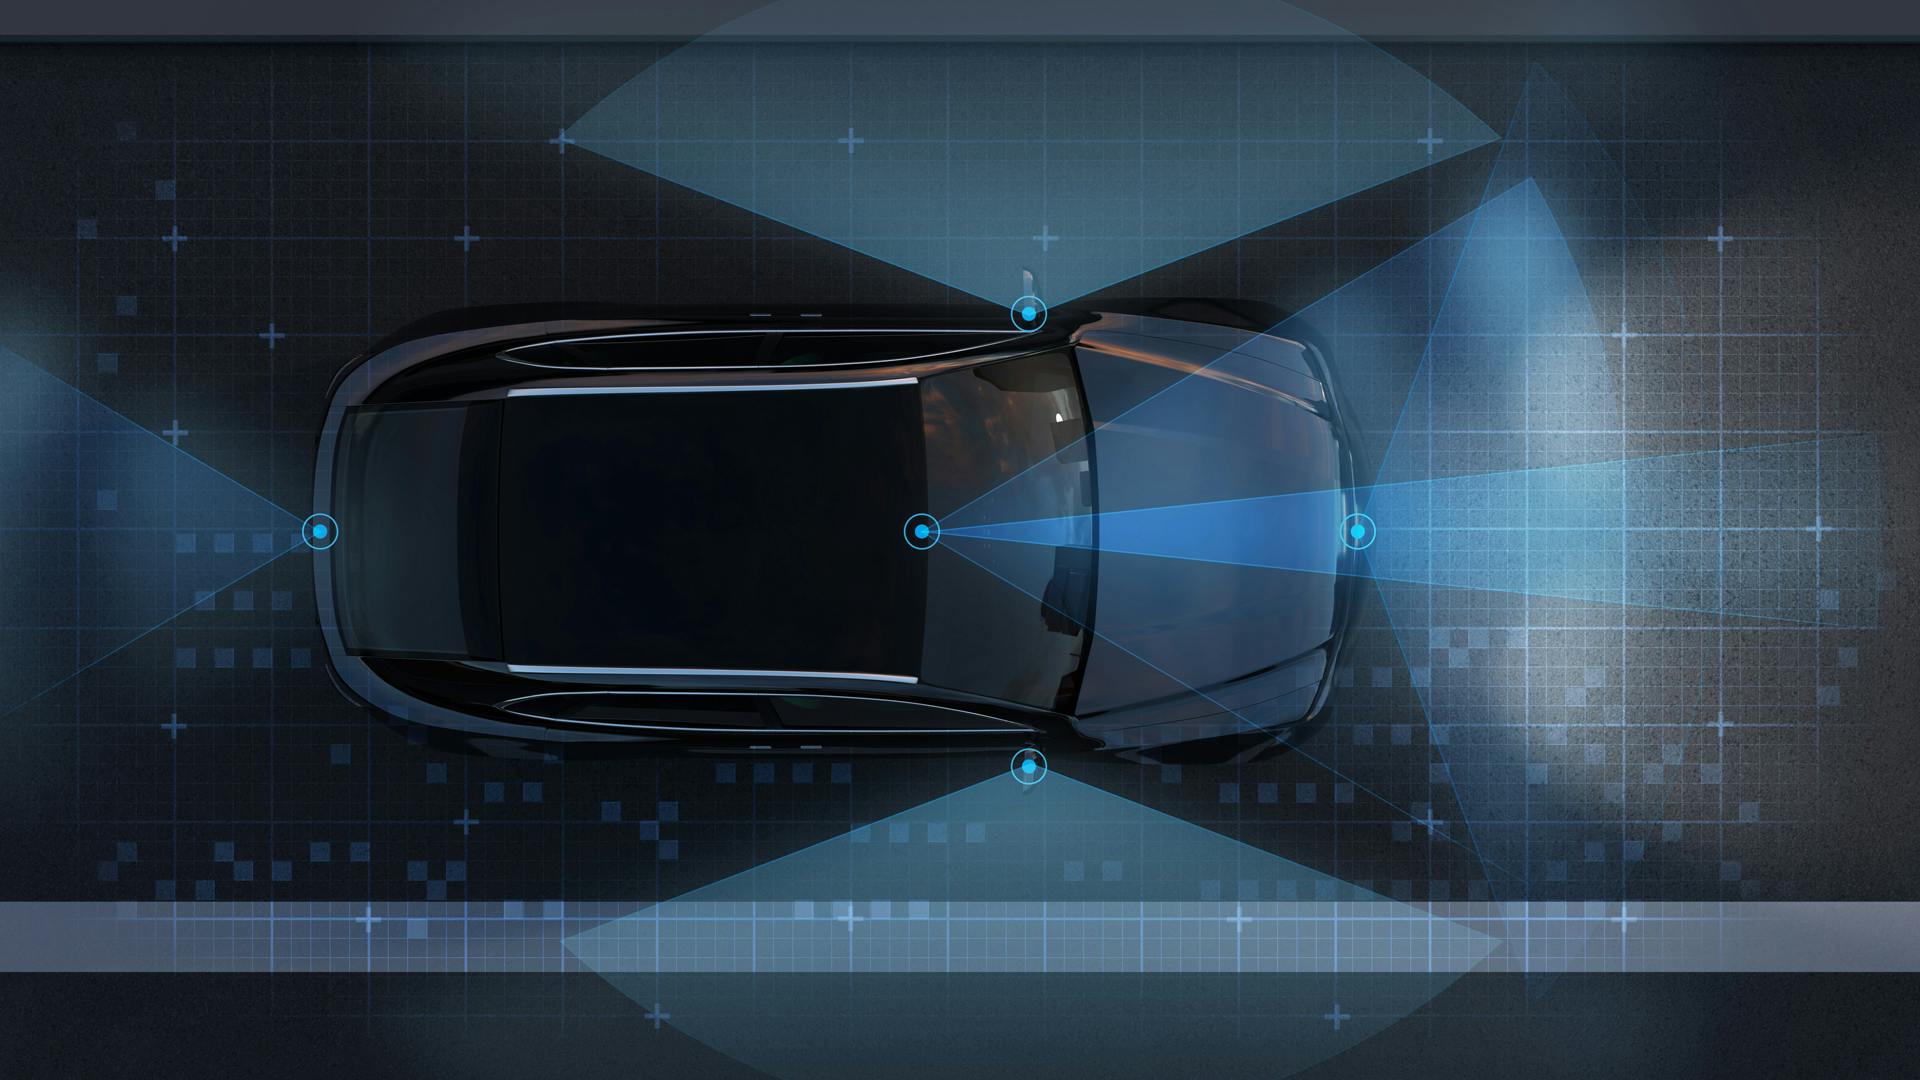 Progettare sensori con prestazioni superiori per i veicoli autonomi, utilizzando la simulazione